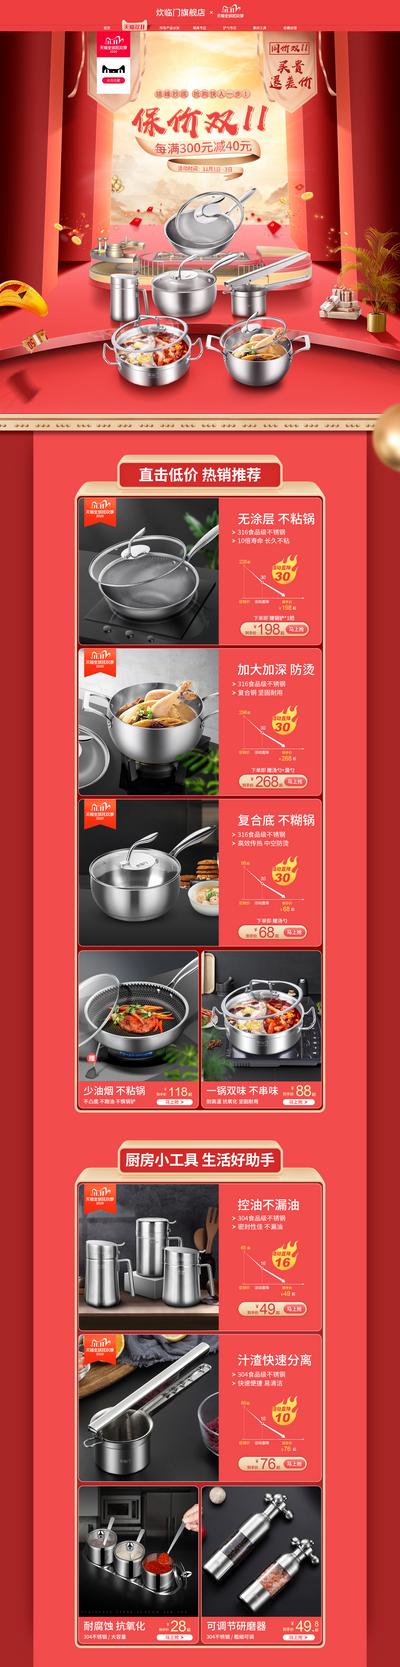 南门网 电商首页 淘宝首页 双十一 双11 促销 炒锅 厨具